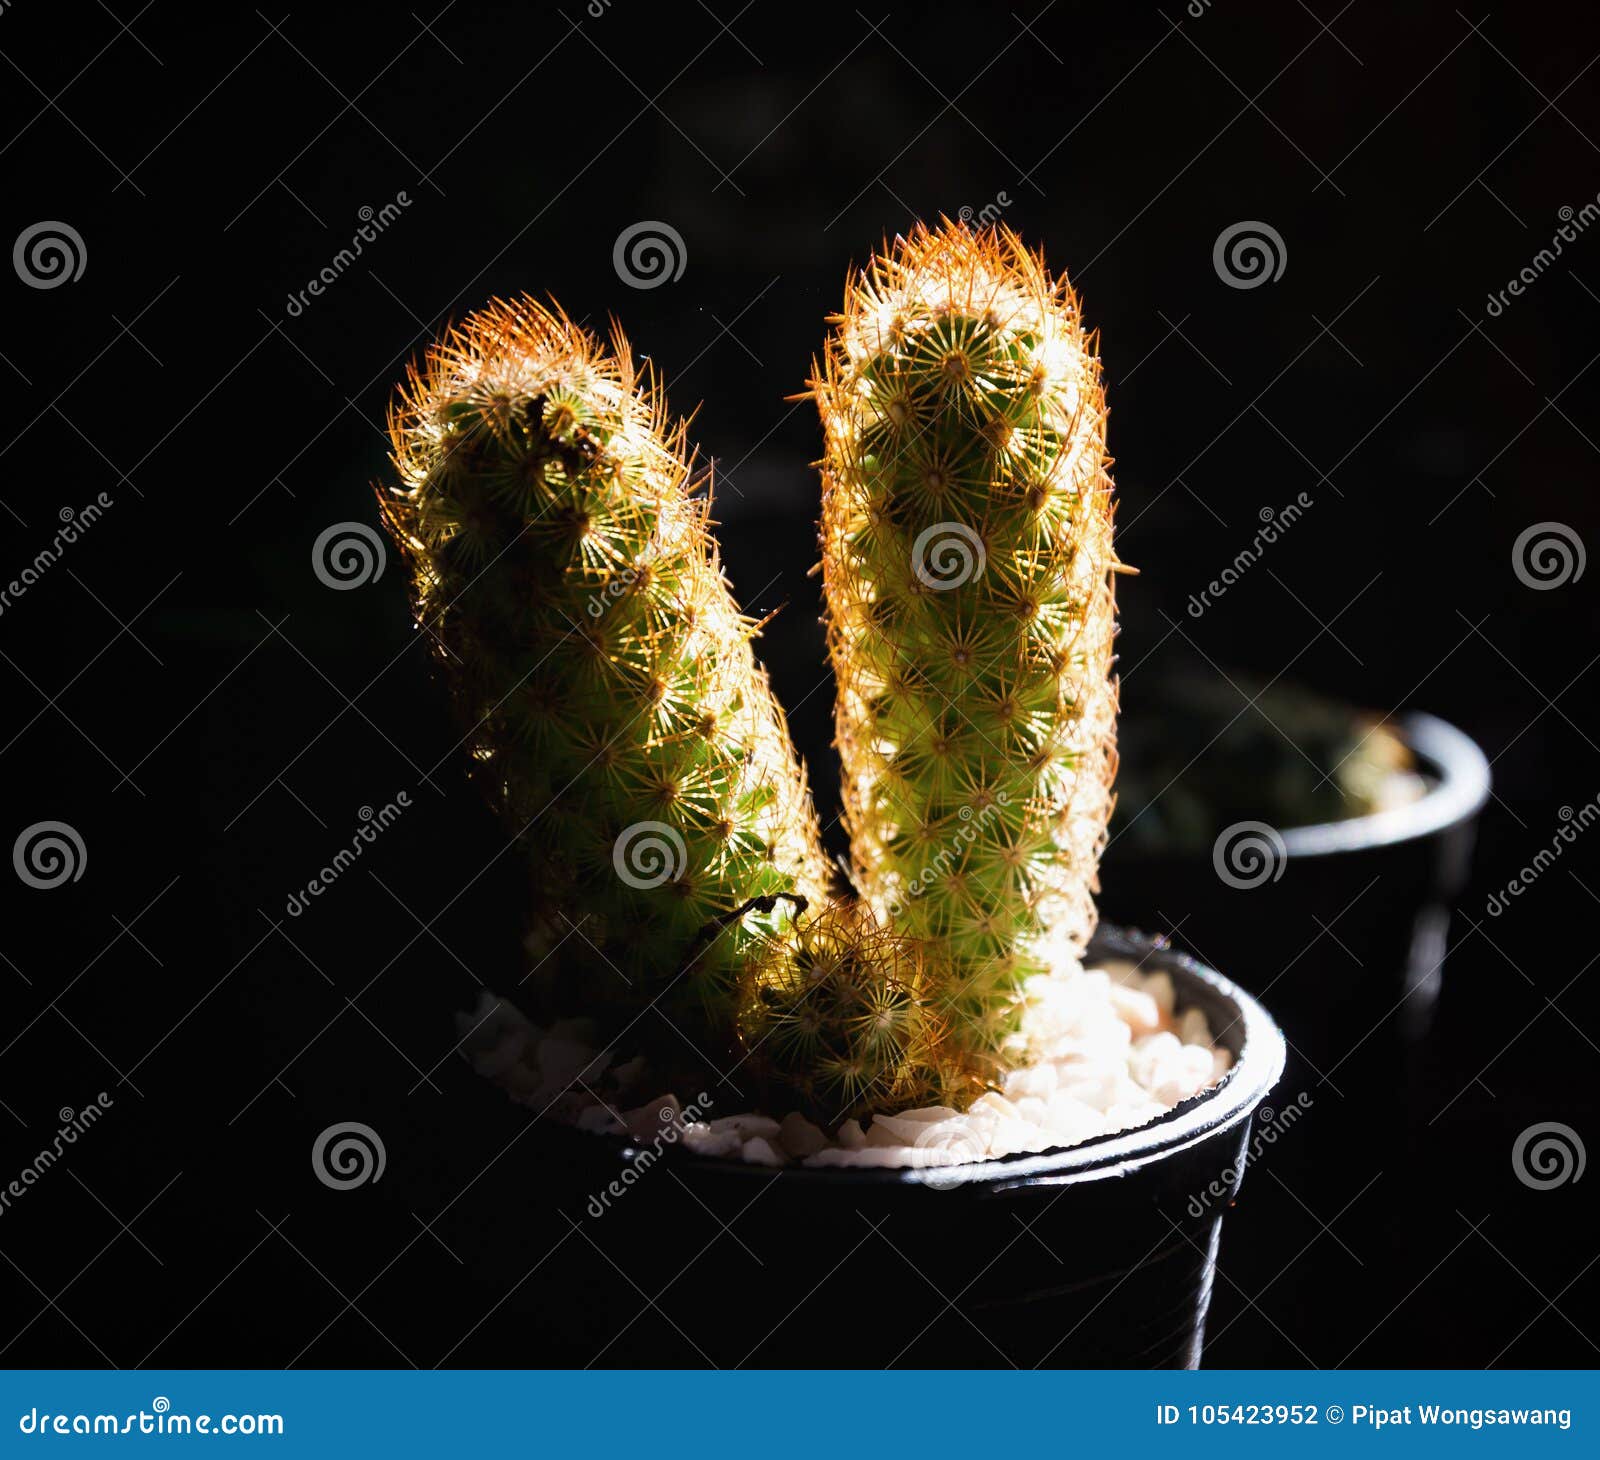 Cactus in vasi, luce del raggio, fondo nero